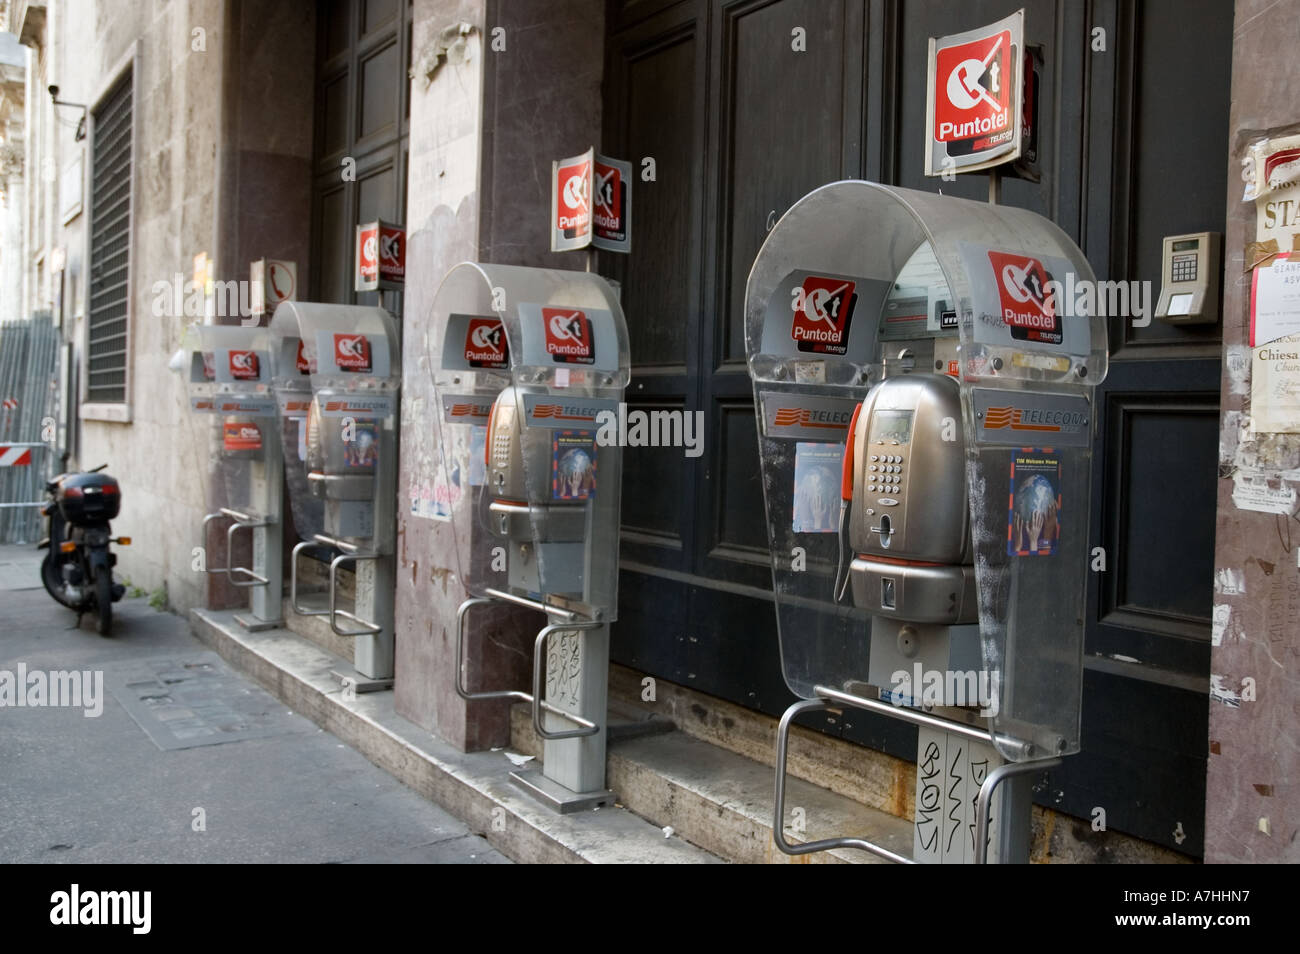 Row of public telephones Rome Stock Photo